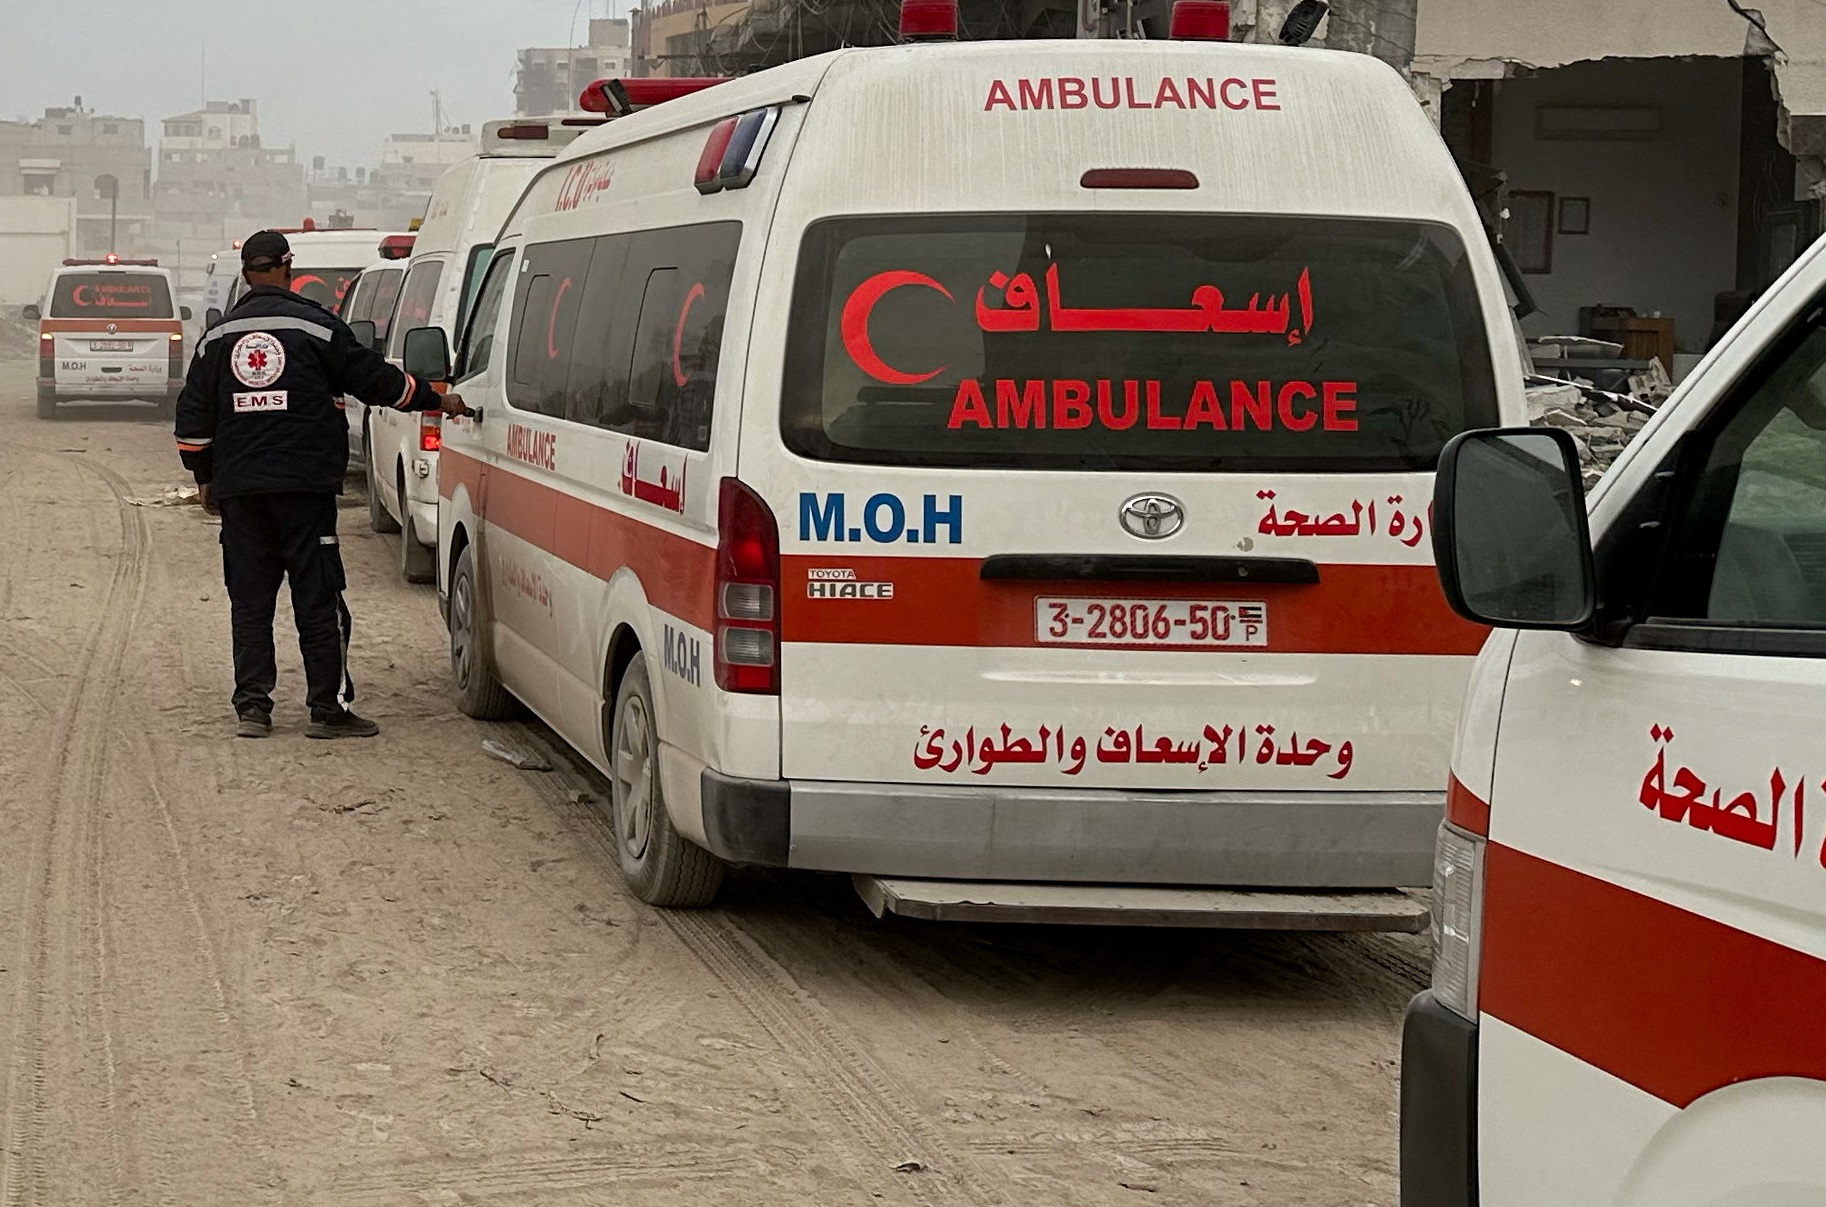 Λωρίδα της Γάζας: Το γαλλικό πλοίο που έχει μετατραπεί σε νοσοκομείο δέχεται τους πρώτους ασθενείς